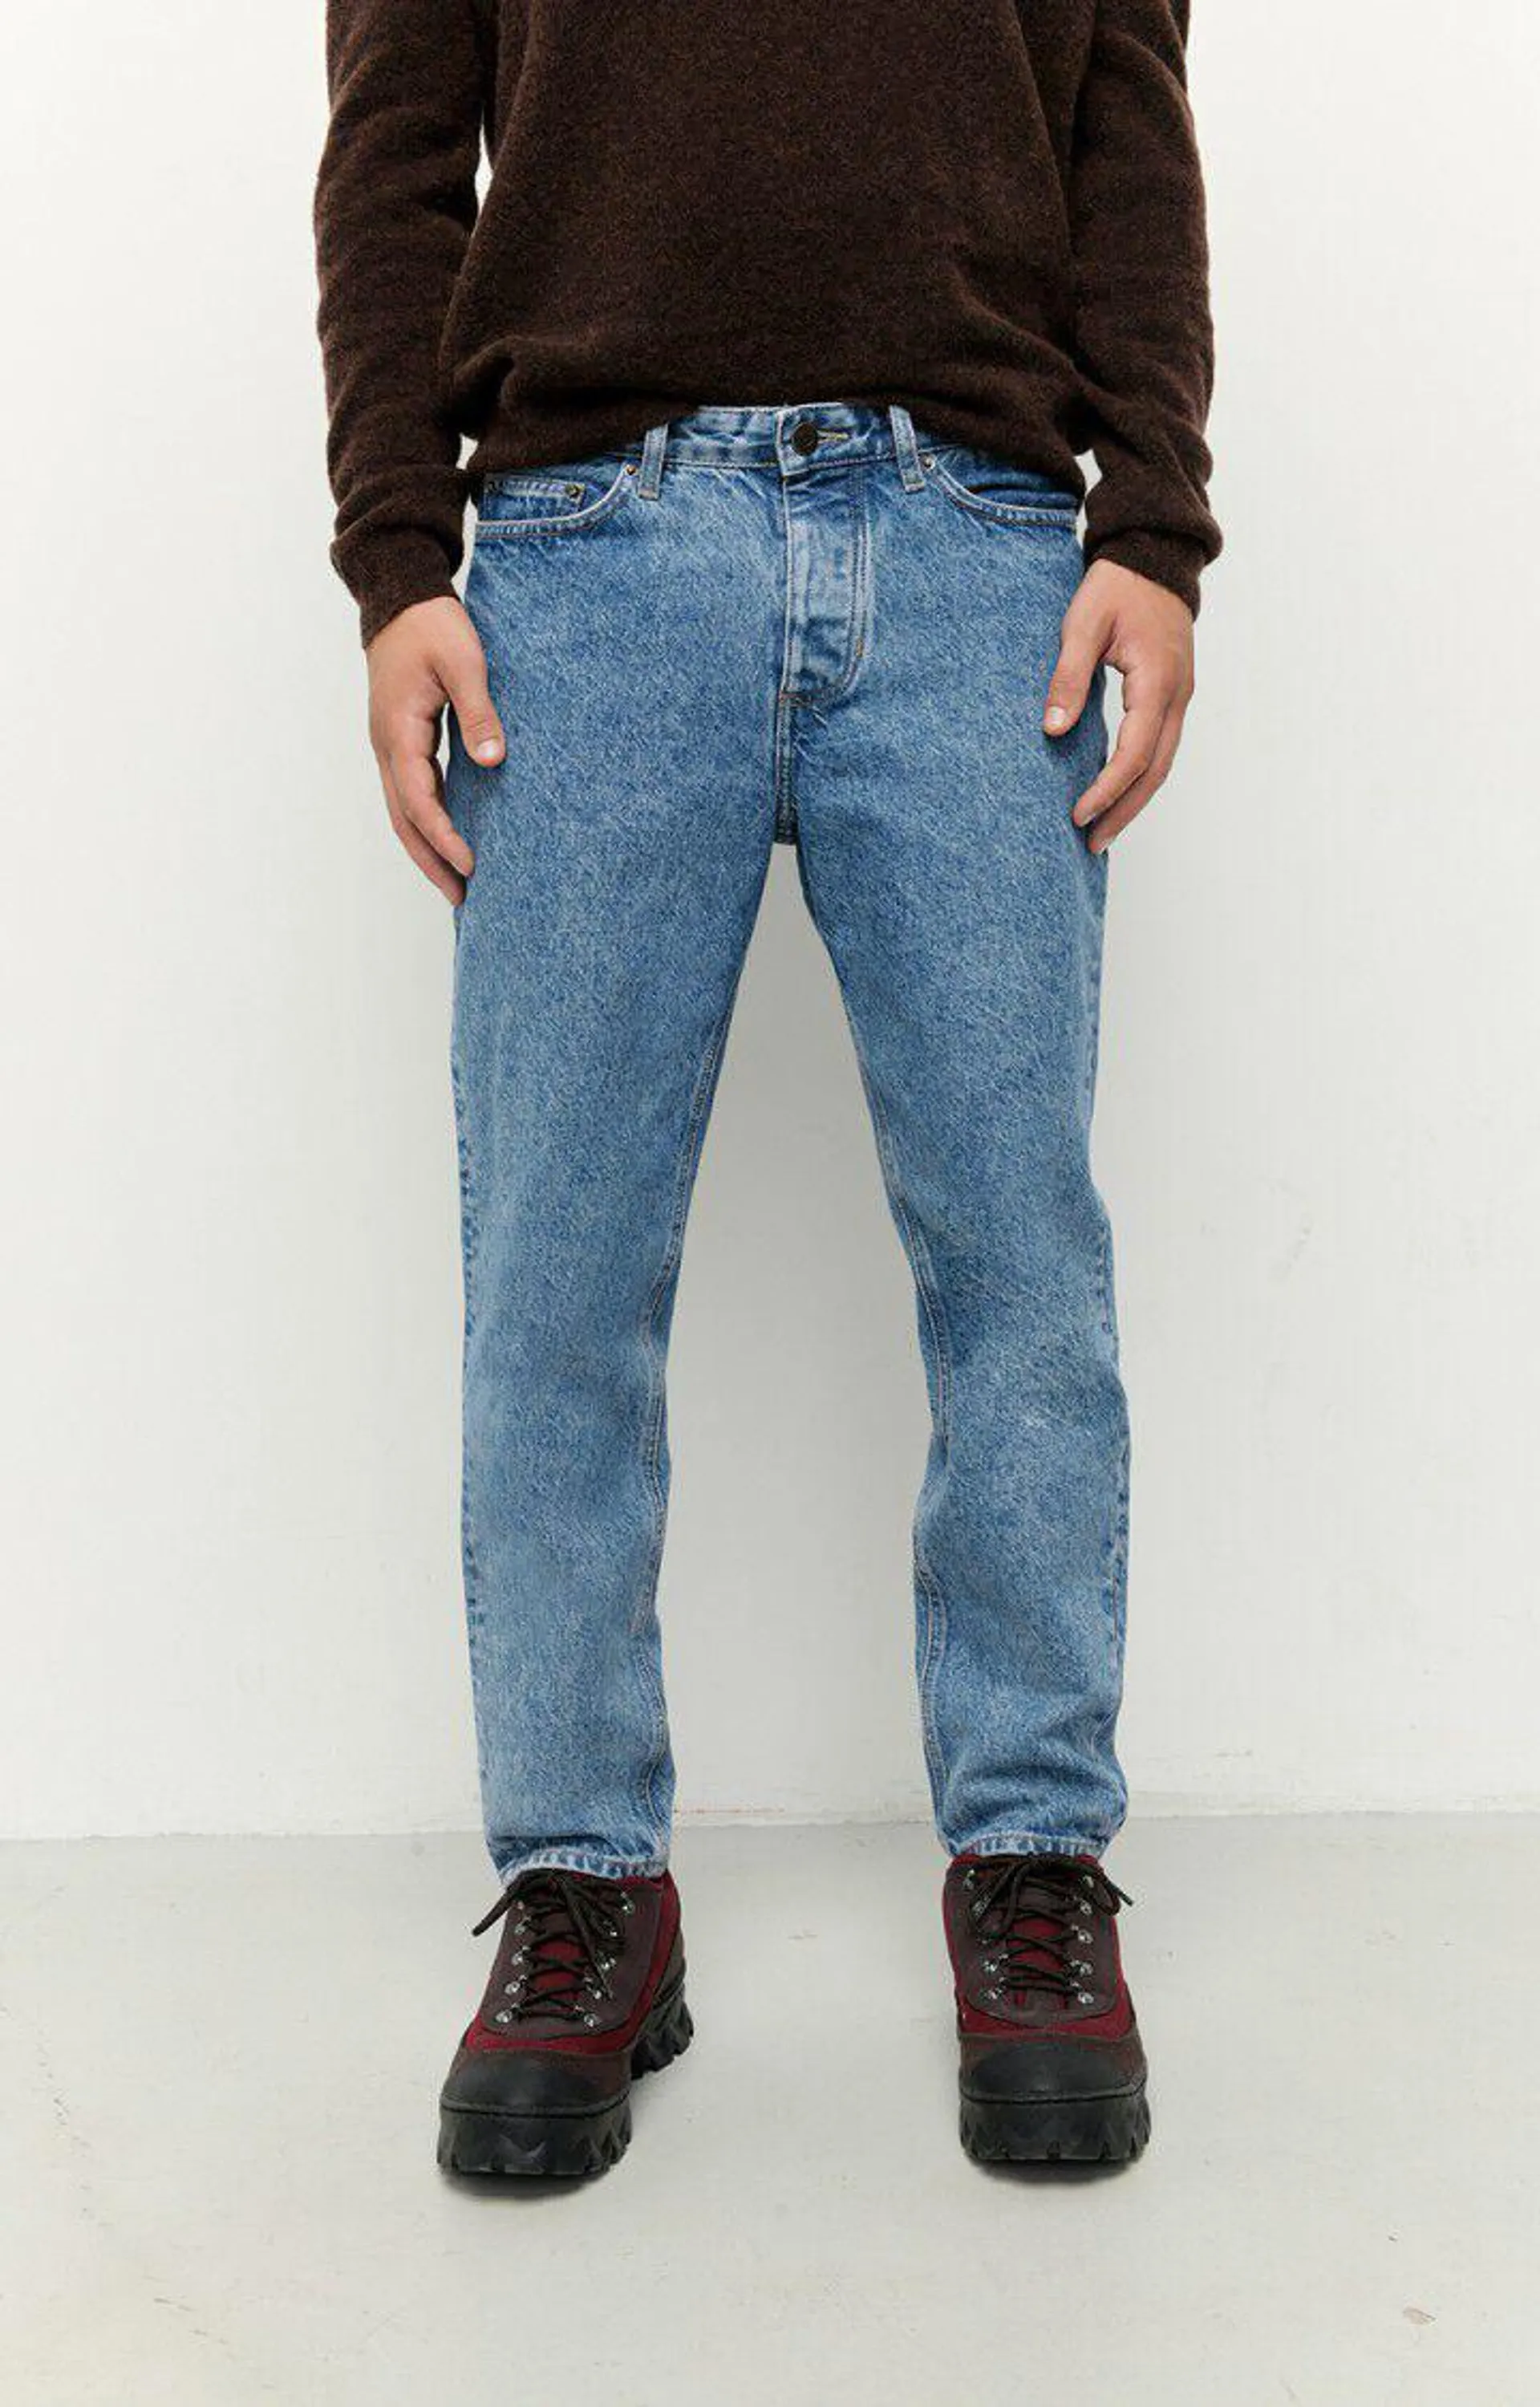 Jeans corte zanahoria hombre Wipy | MWIP56H22